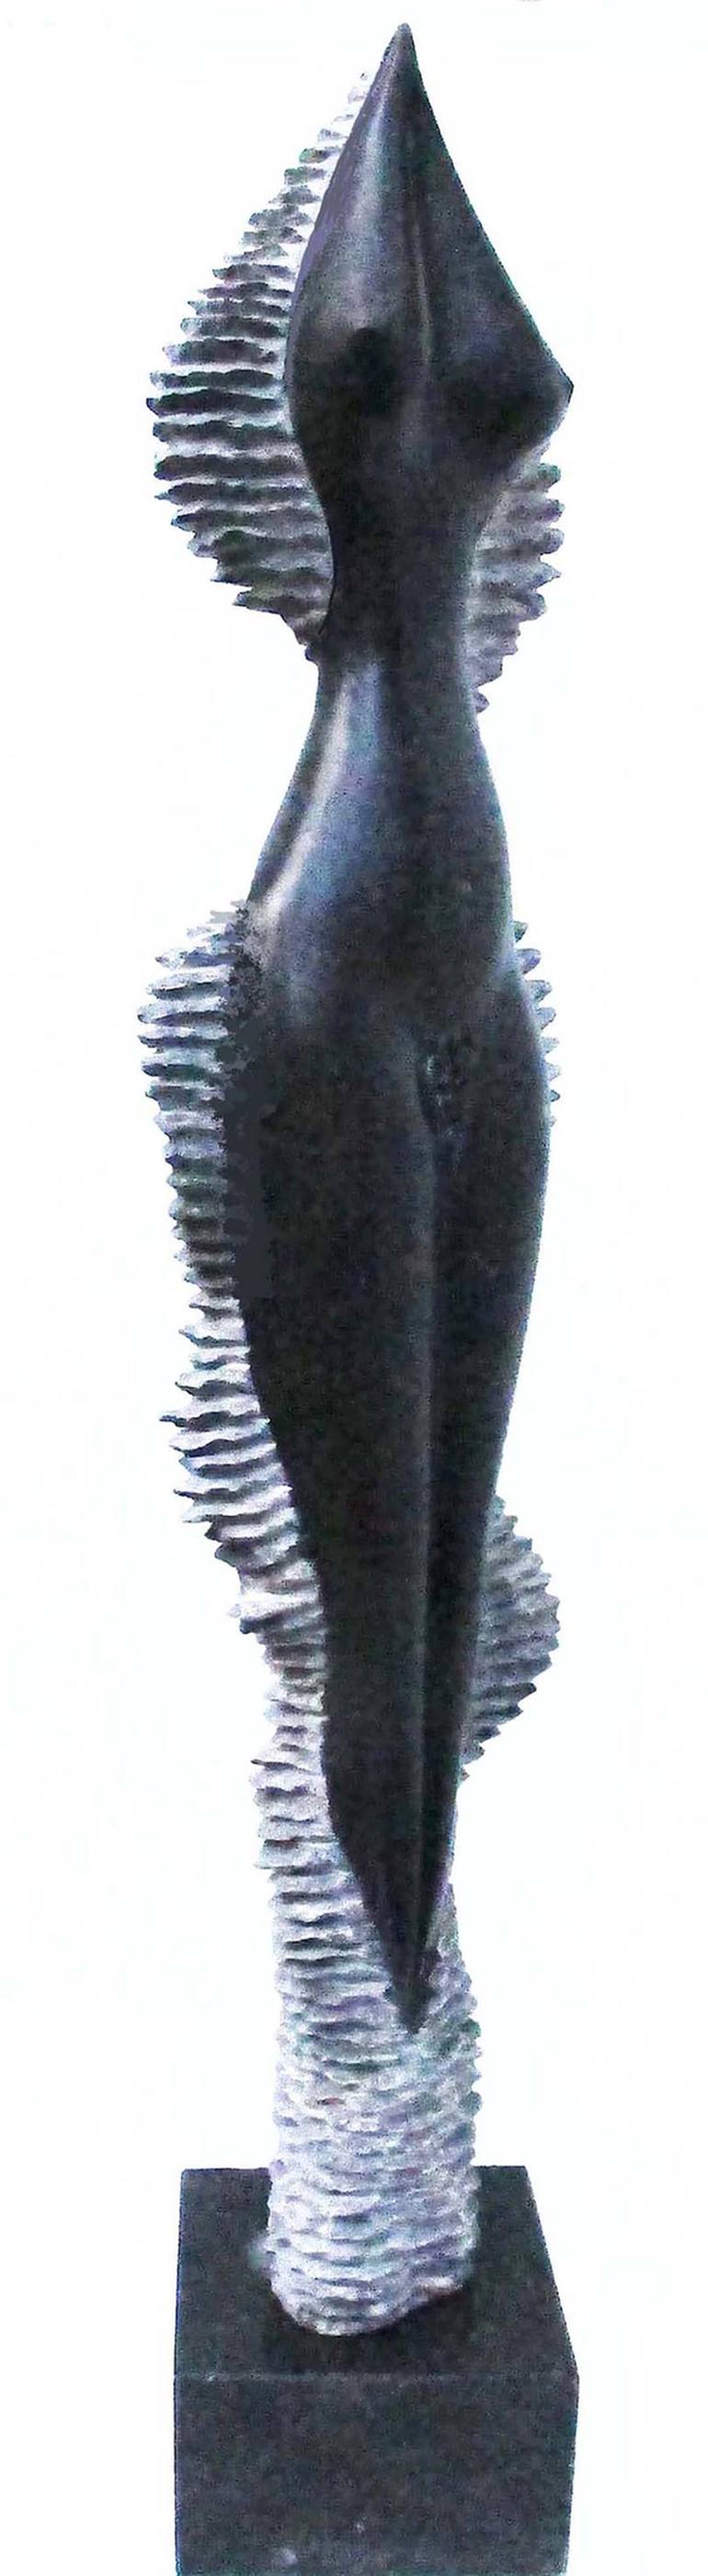 Original Women Sculpture by Marian C SAVA